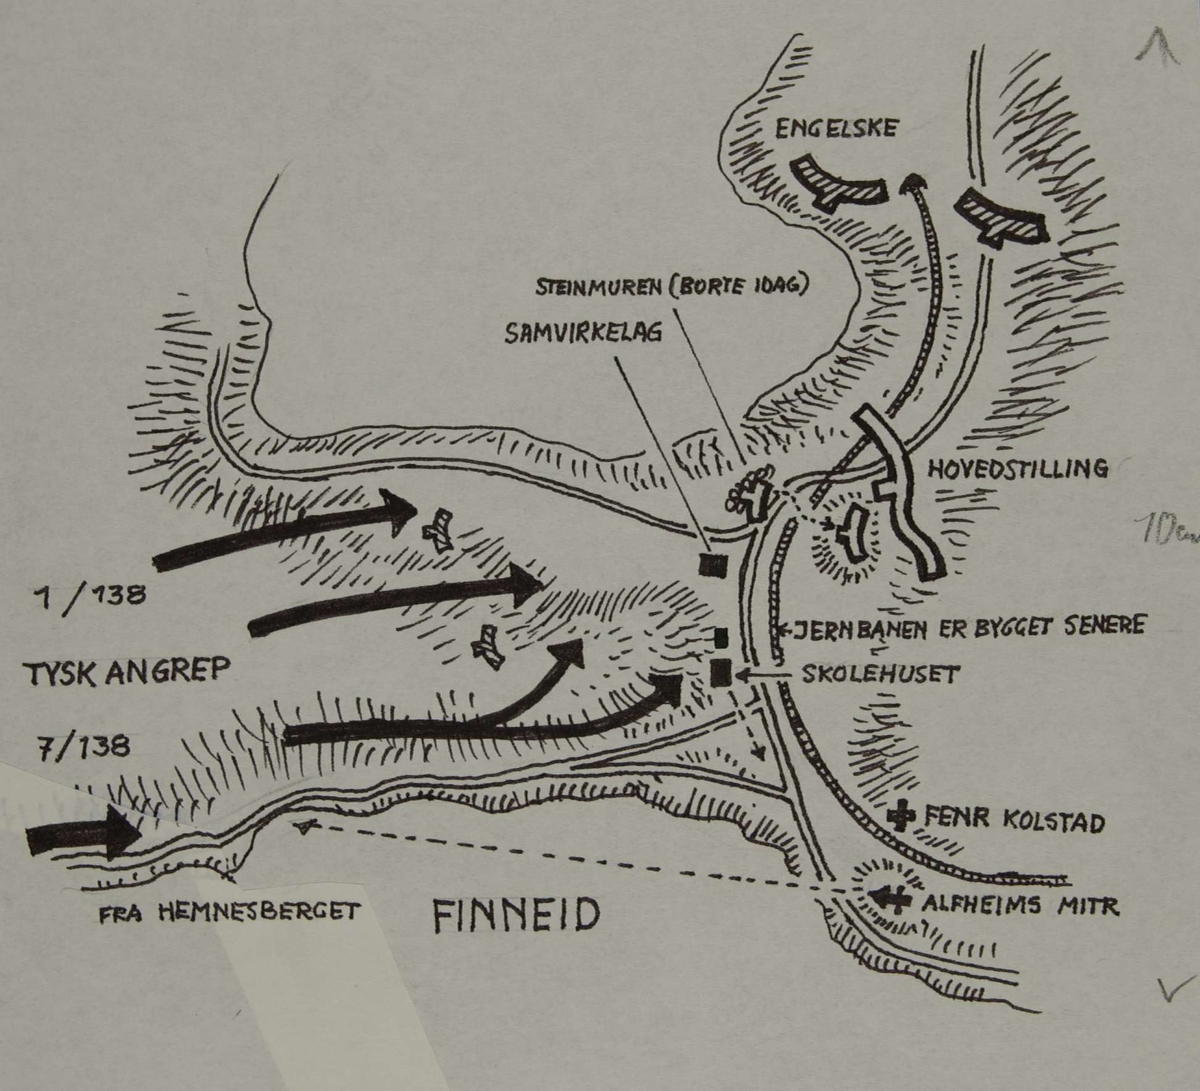 Tysk angrep ved Finneid. Tyske forflytninger og norske stillinger. Kampene i Norge 1940.